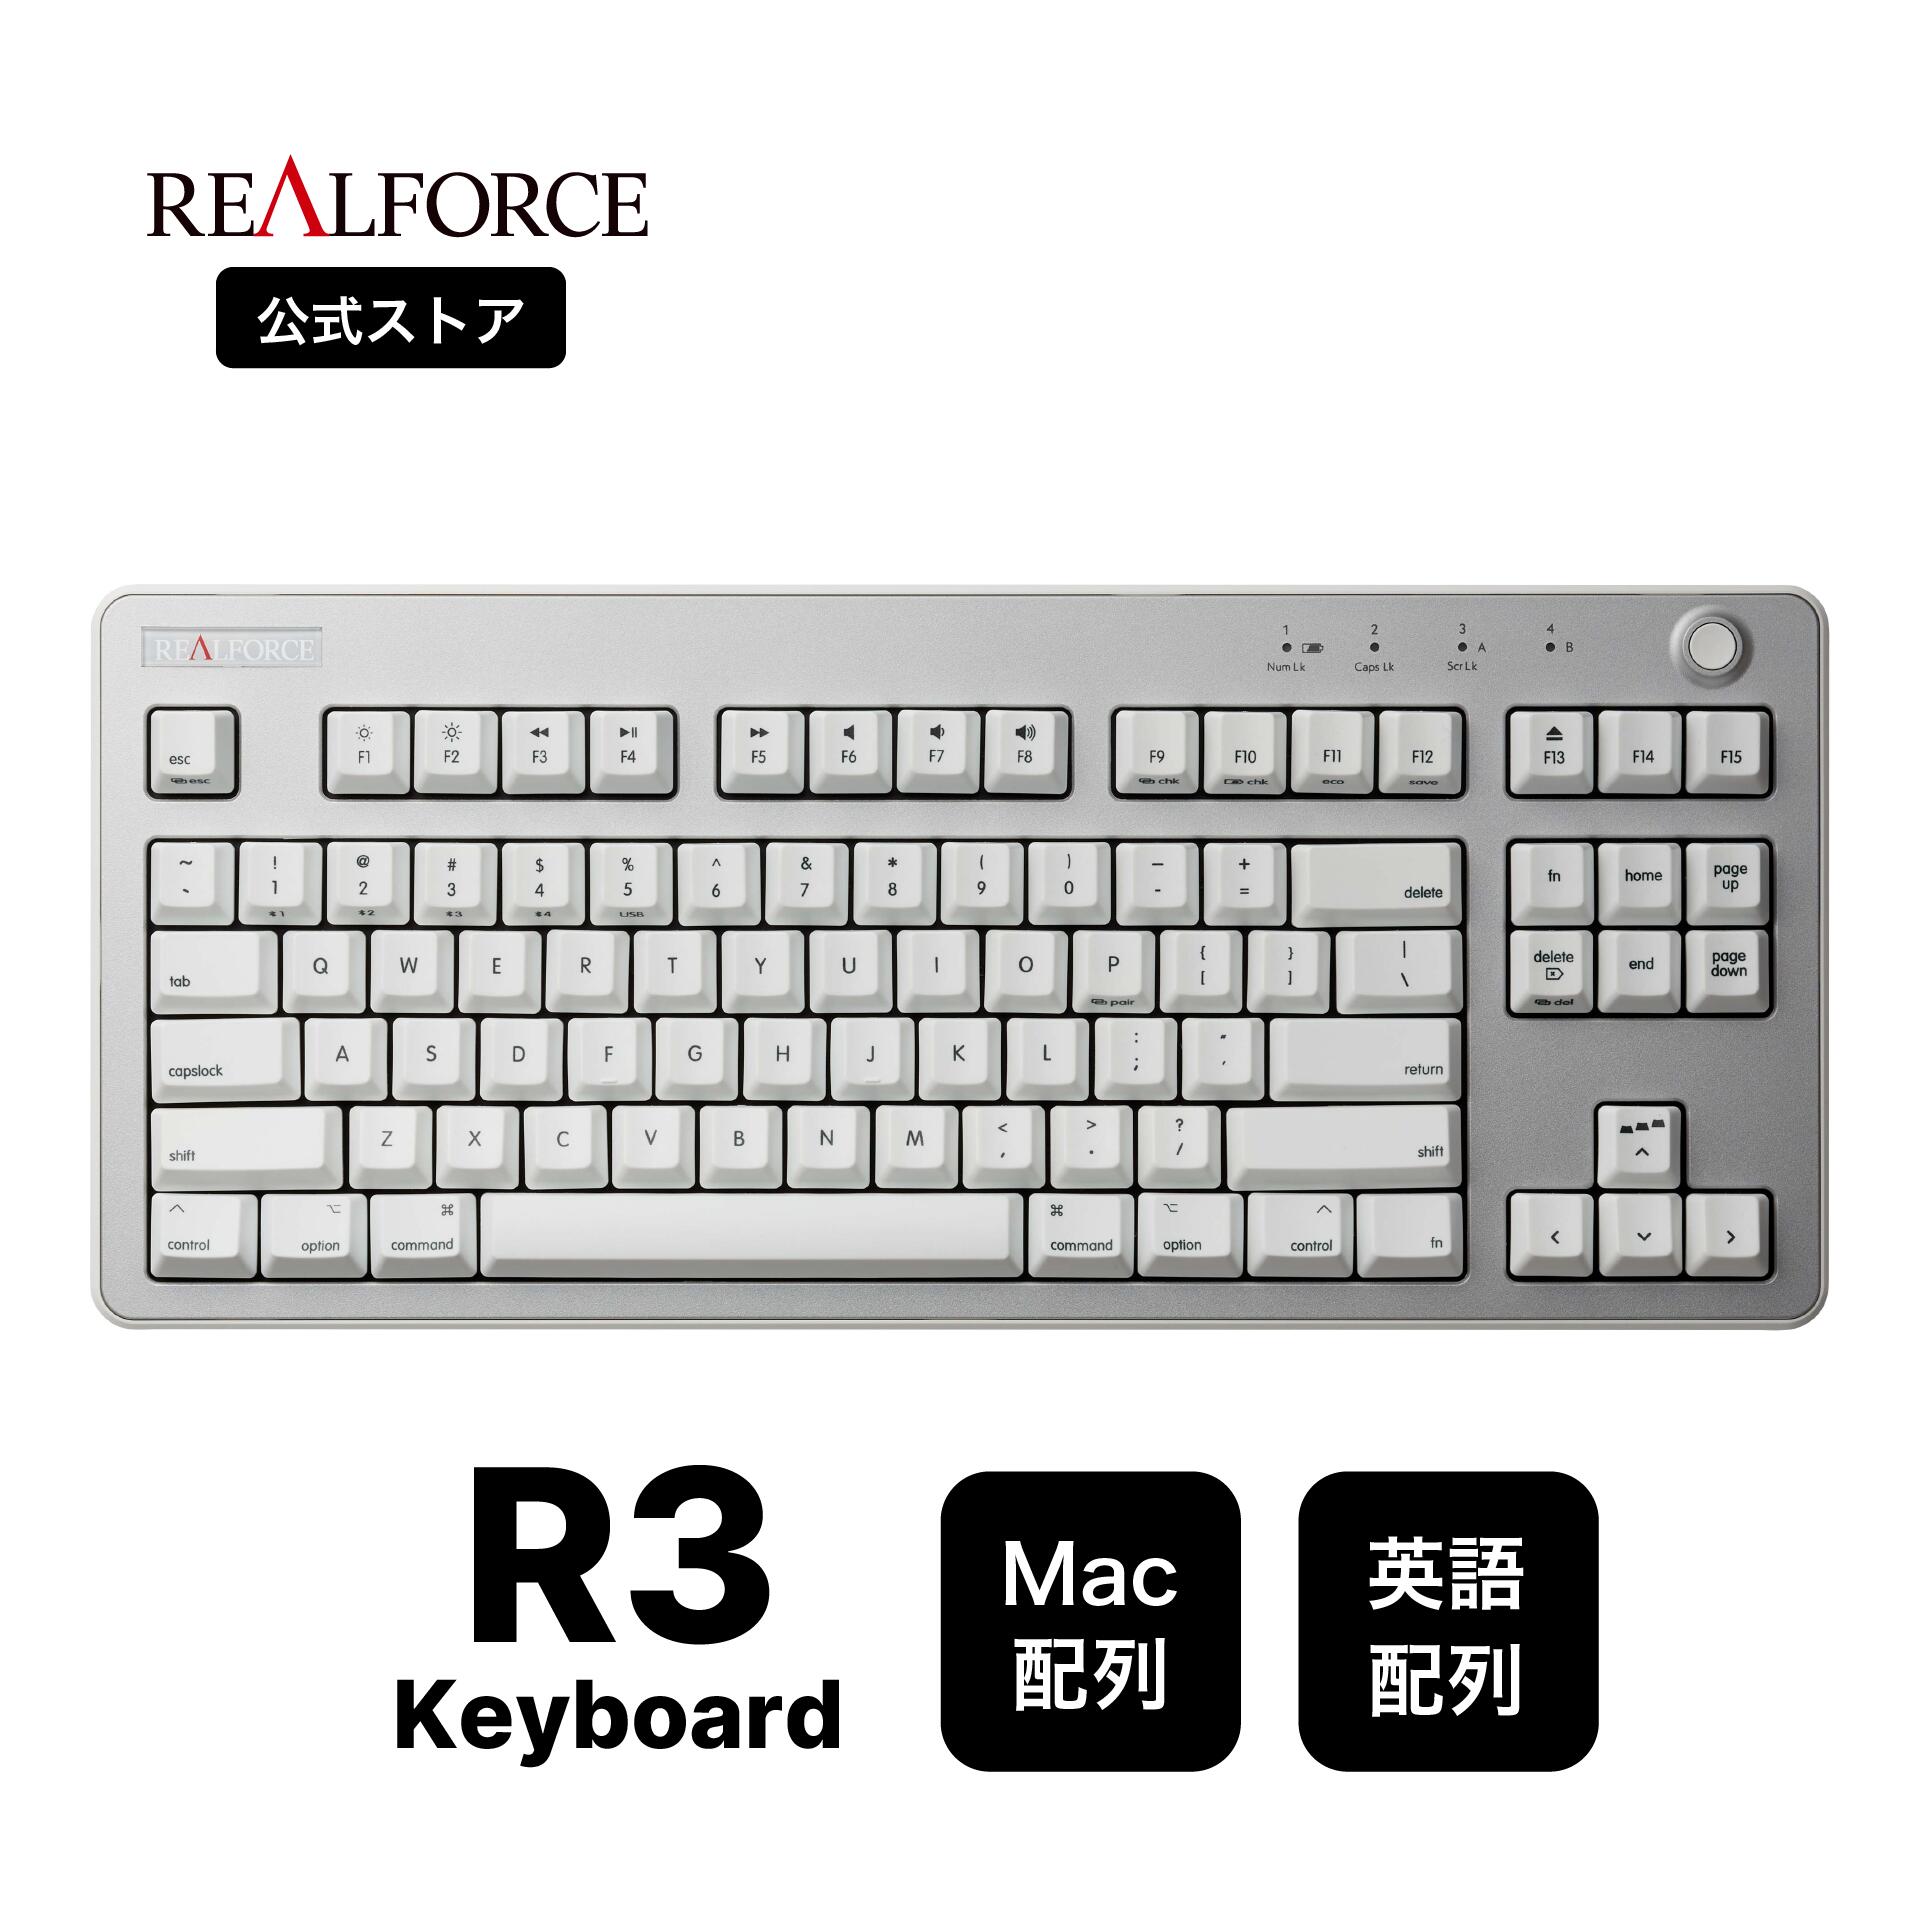 REALFORCE GX1 キーボード 日本語配列 45g-